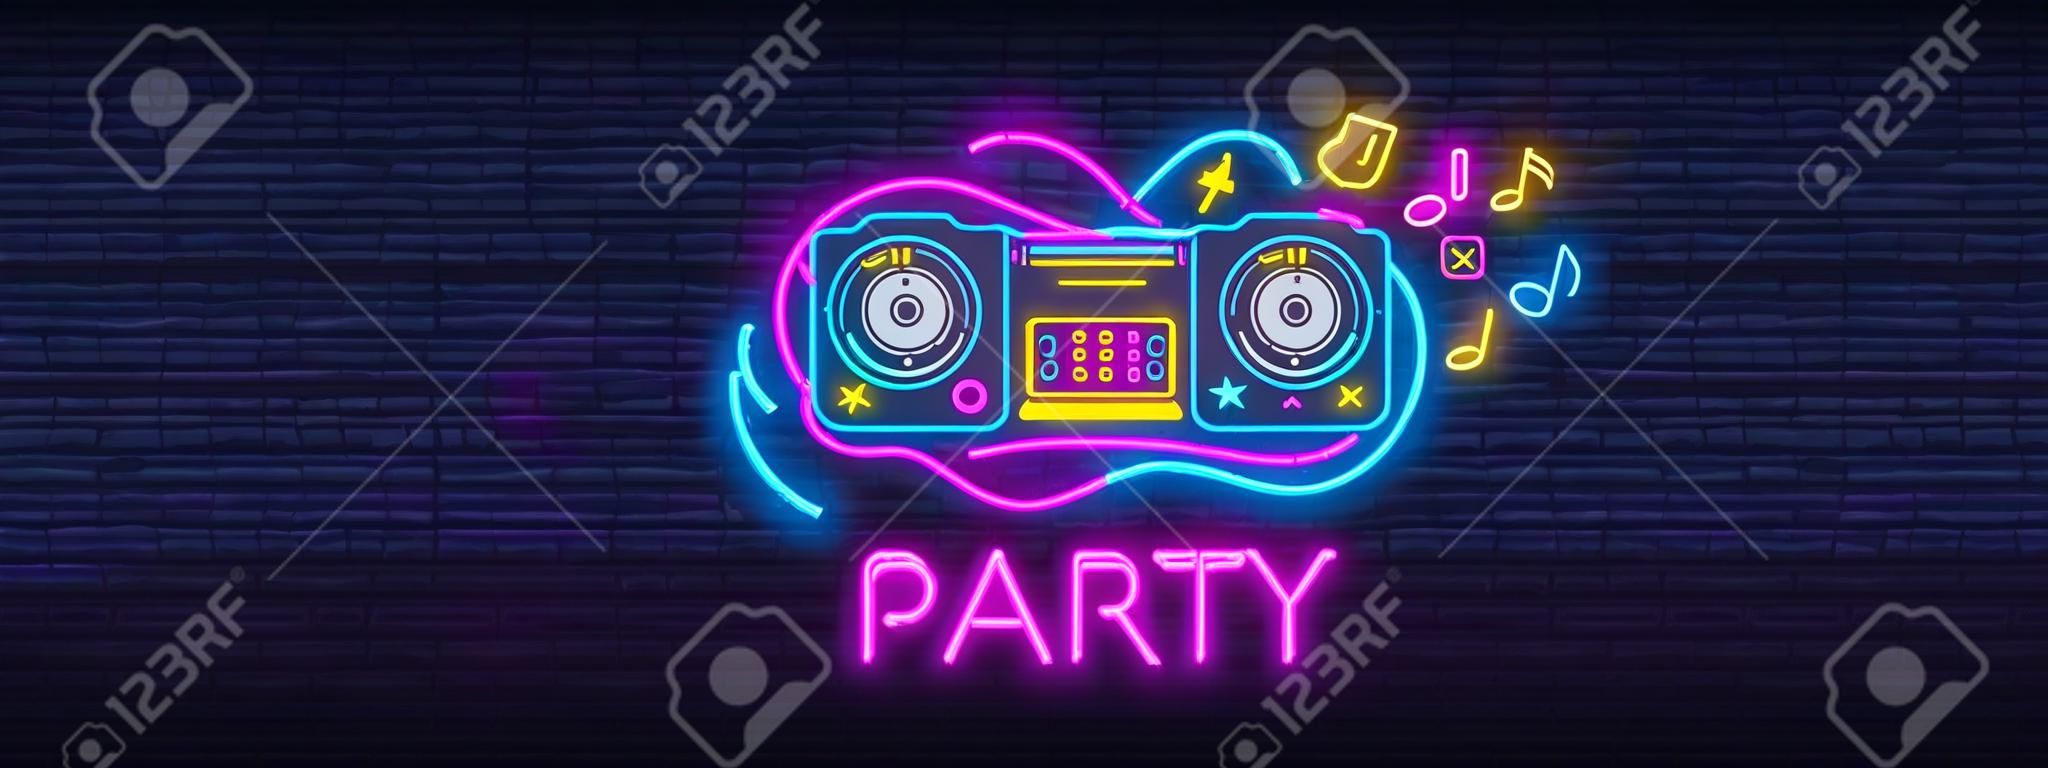 DJ Music Party neon teken collectie vector ontwerp template. DJ Concept van muziek, radio en live concert, neon poster, licht banner ontwerp element kleurrijk, nacht helder reclame.